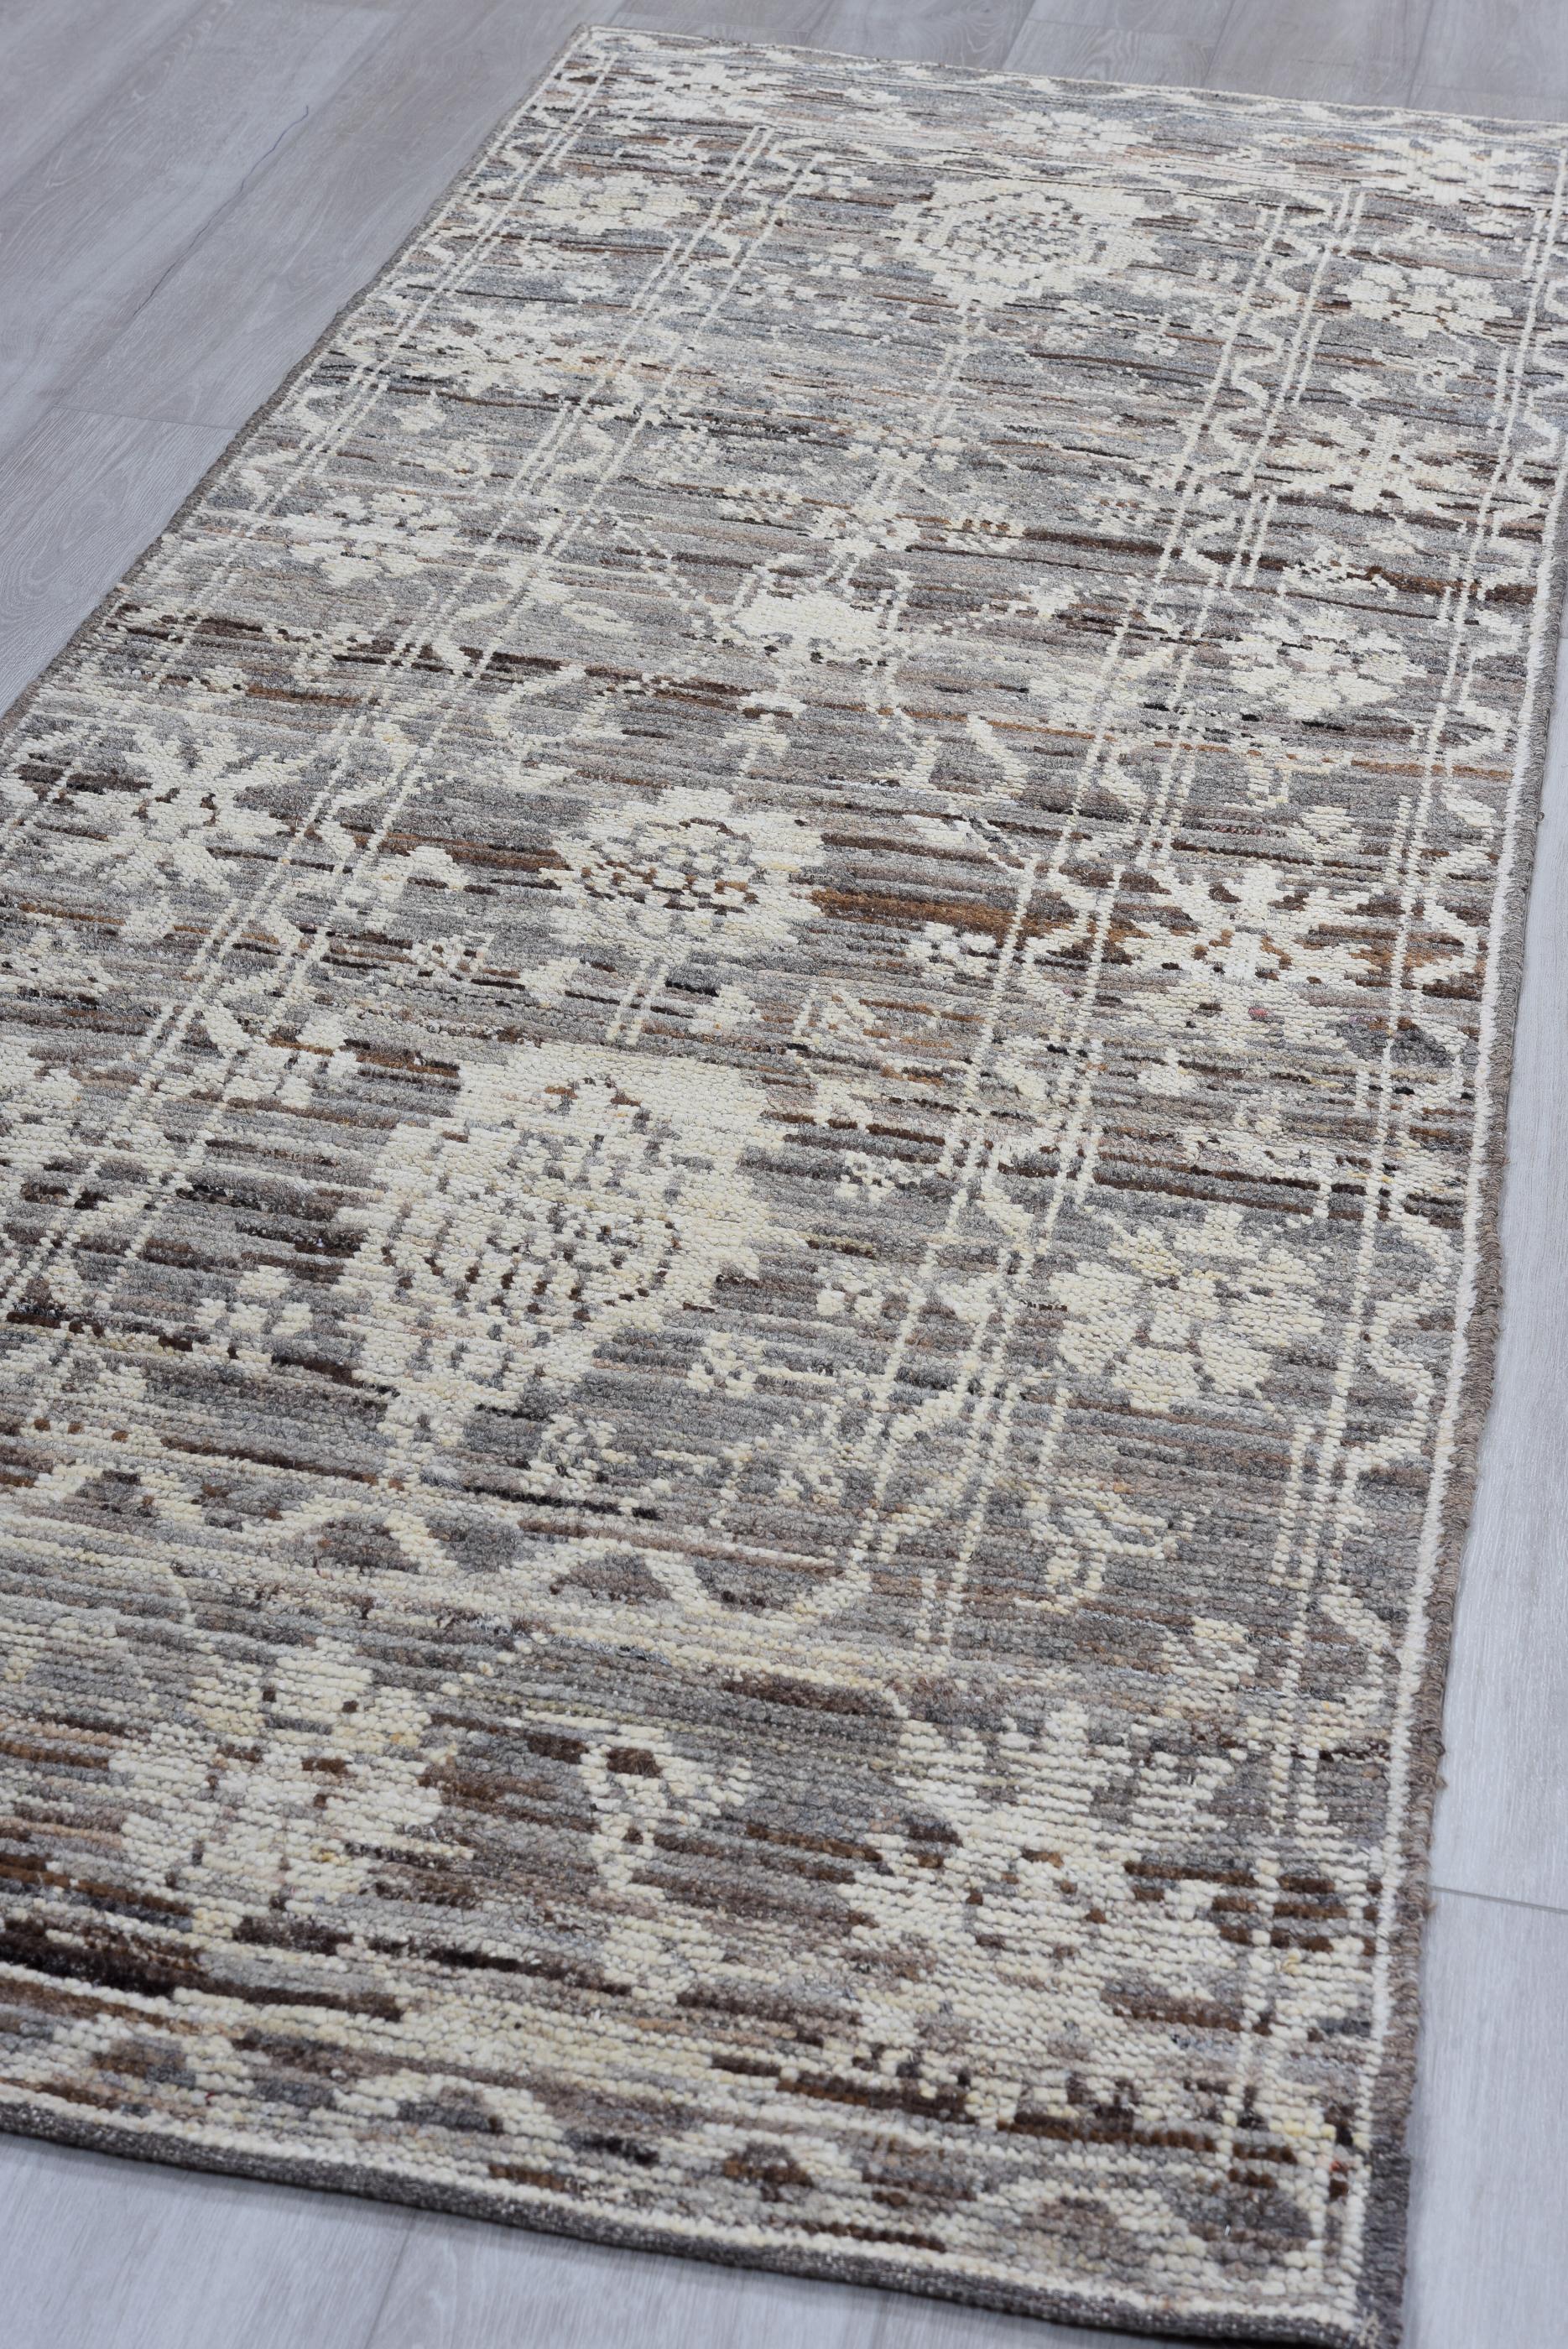 Nom d'origine turque désignant les tapis fabriqués par les villageois pour un usage domestique, souvent de petite taille, en raison des restrictions de taille des métiers à tisser à l'intérieur des maisons. Ils sont tissés sous forme de tapis épais